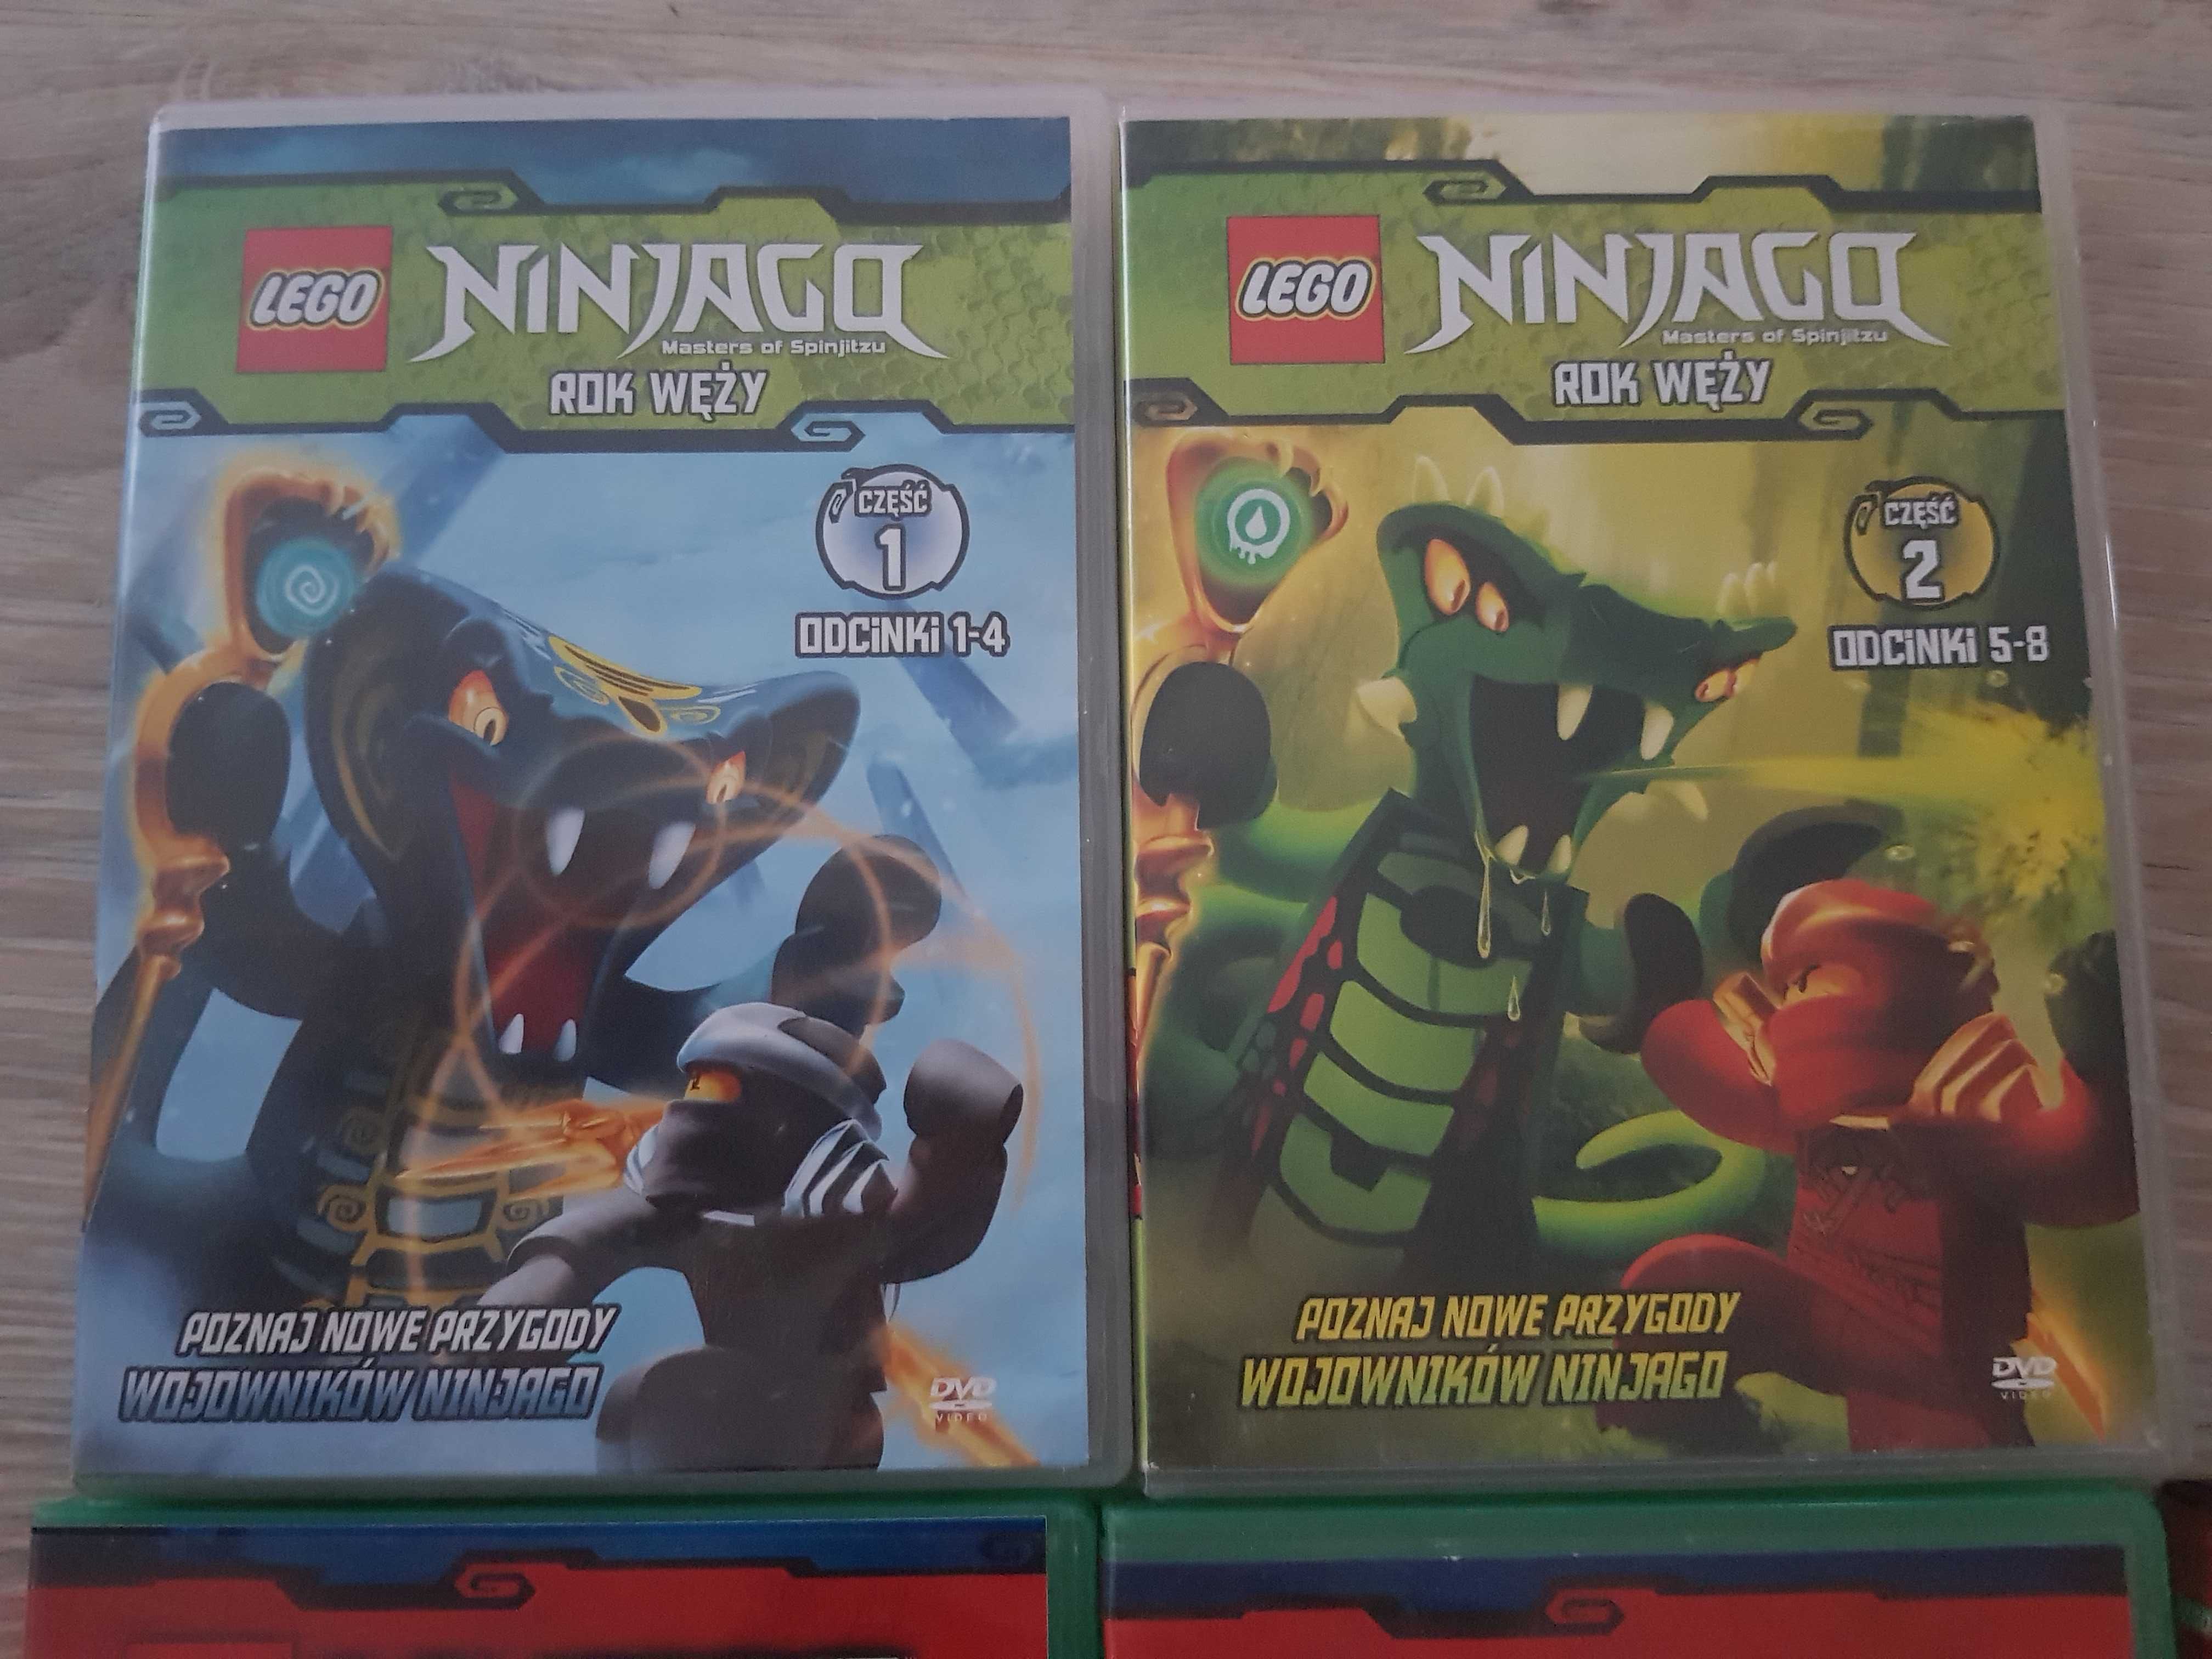 Lego Ninjago Star Wars 8 plyt DVD bajka filmy dla dzieci.